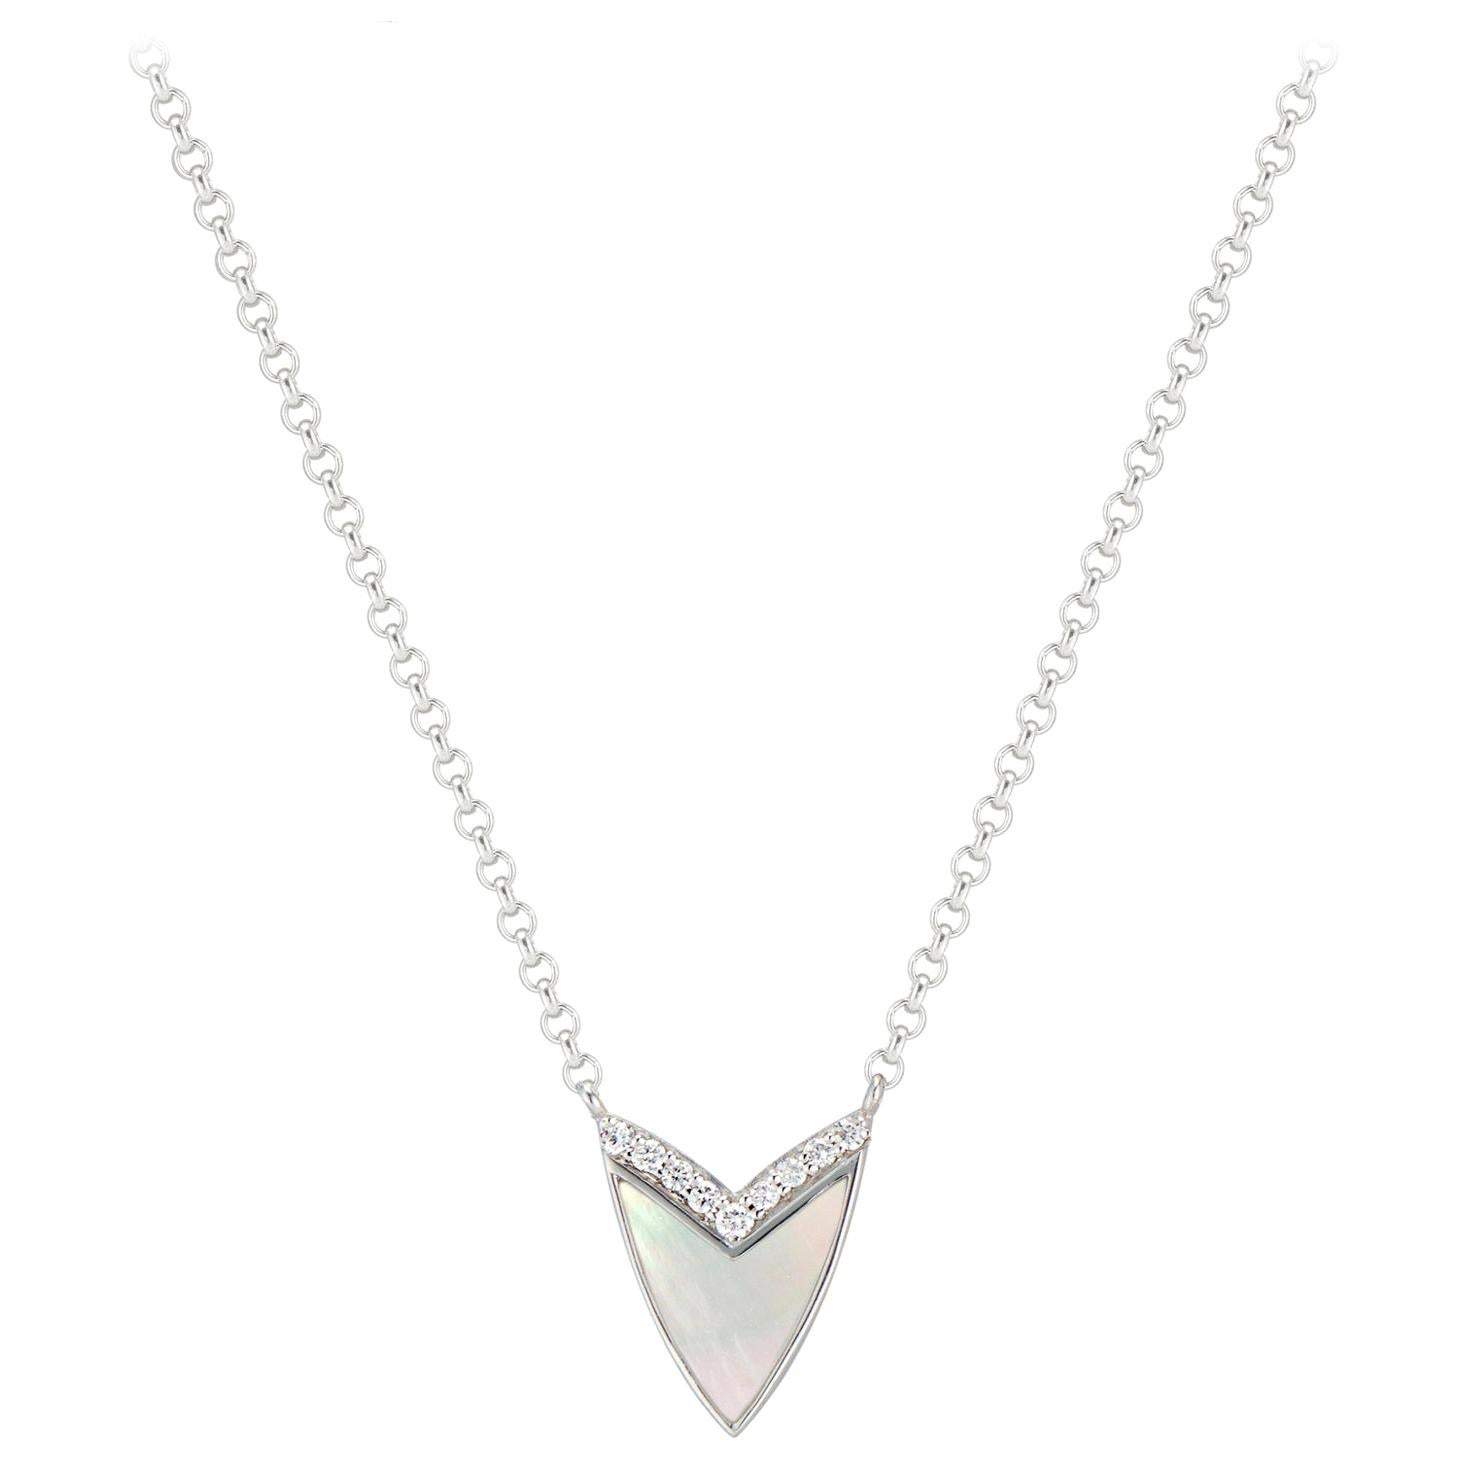 Die elegante kubistische Herz-Halskette mit Perlmutt und Diamanten von Ri Noor verleiht jedem Outfit einen Hauch von Raffinesse. Der Anhänger ist von der Form eines Herzens inspiriert und abstrahiert sie zu einer geometrischen Form mit einem V aus